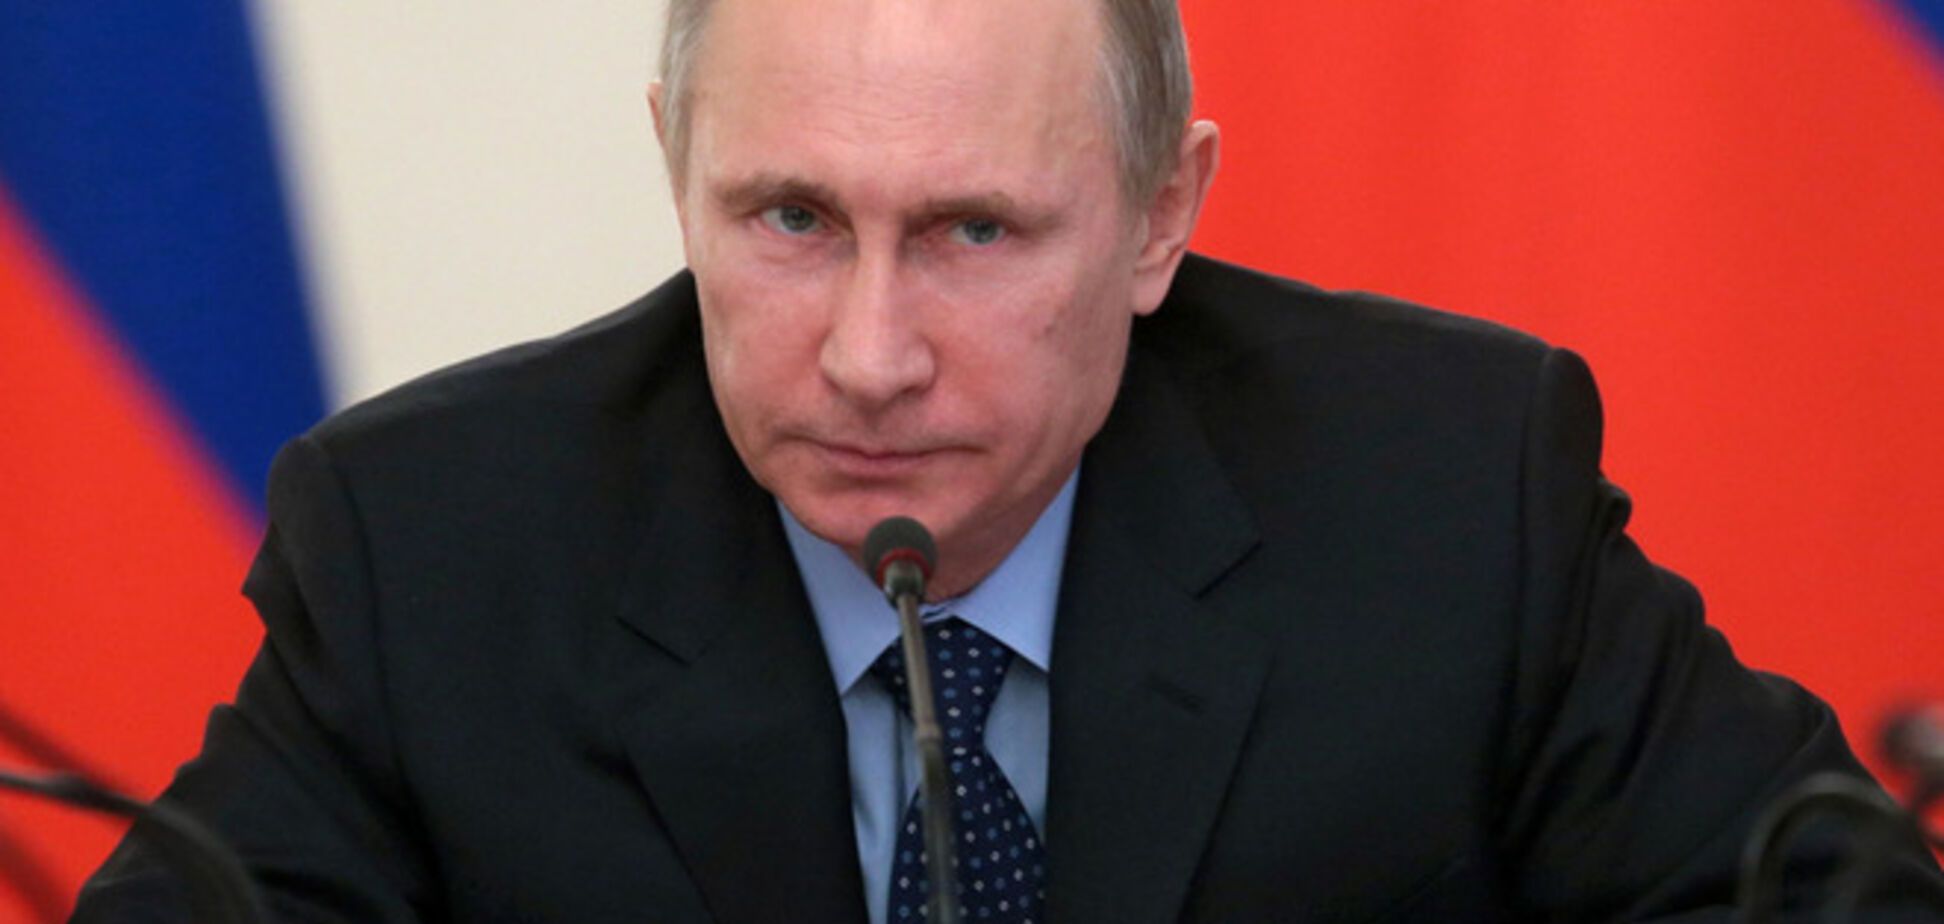 Напавши на Україну, Путін прискорив агонію своєї влади в Росії - політолог